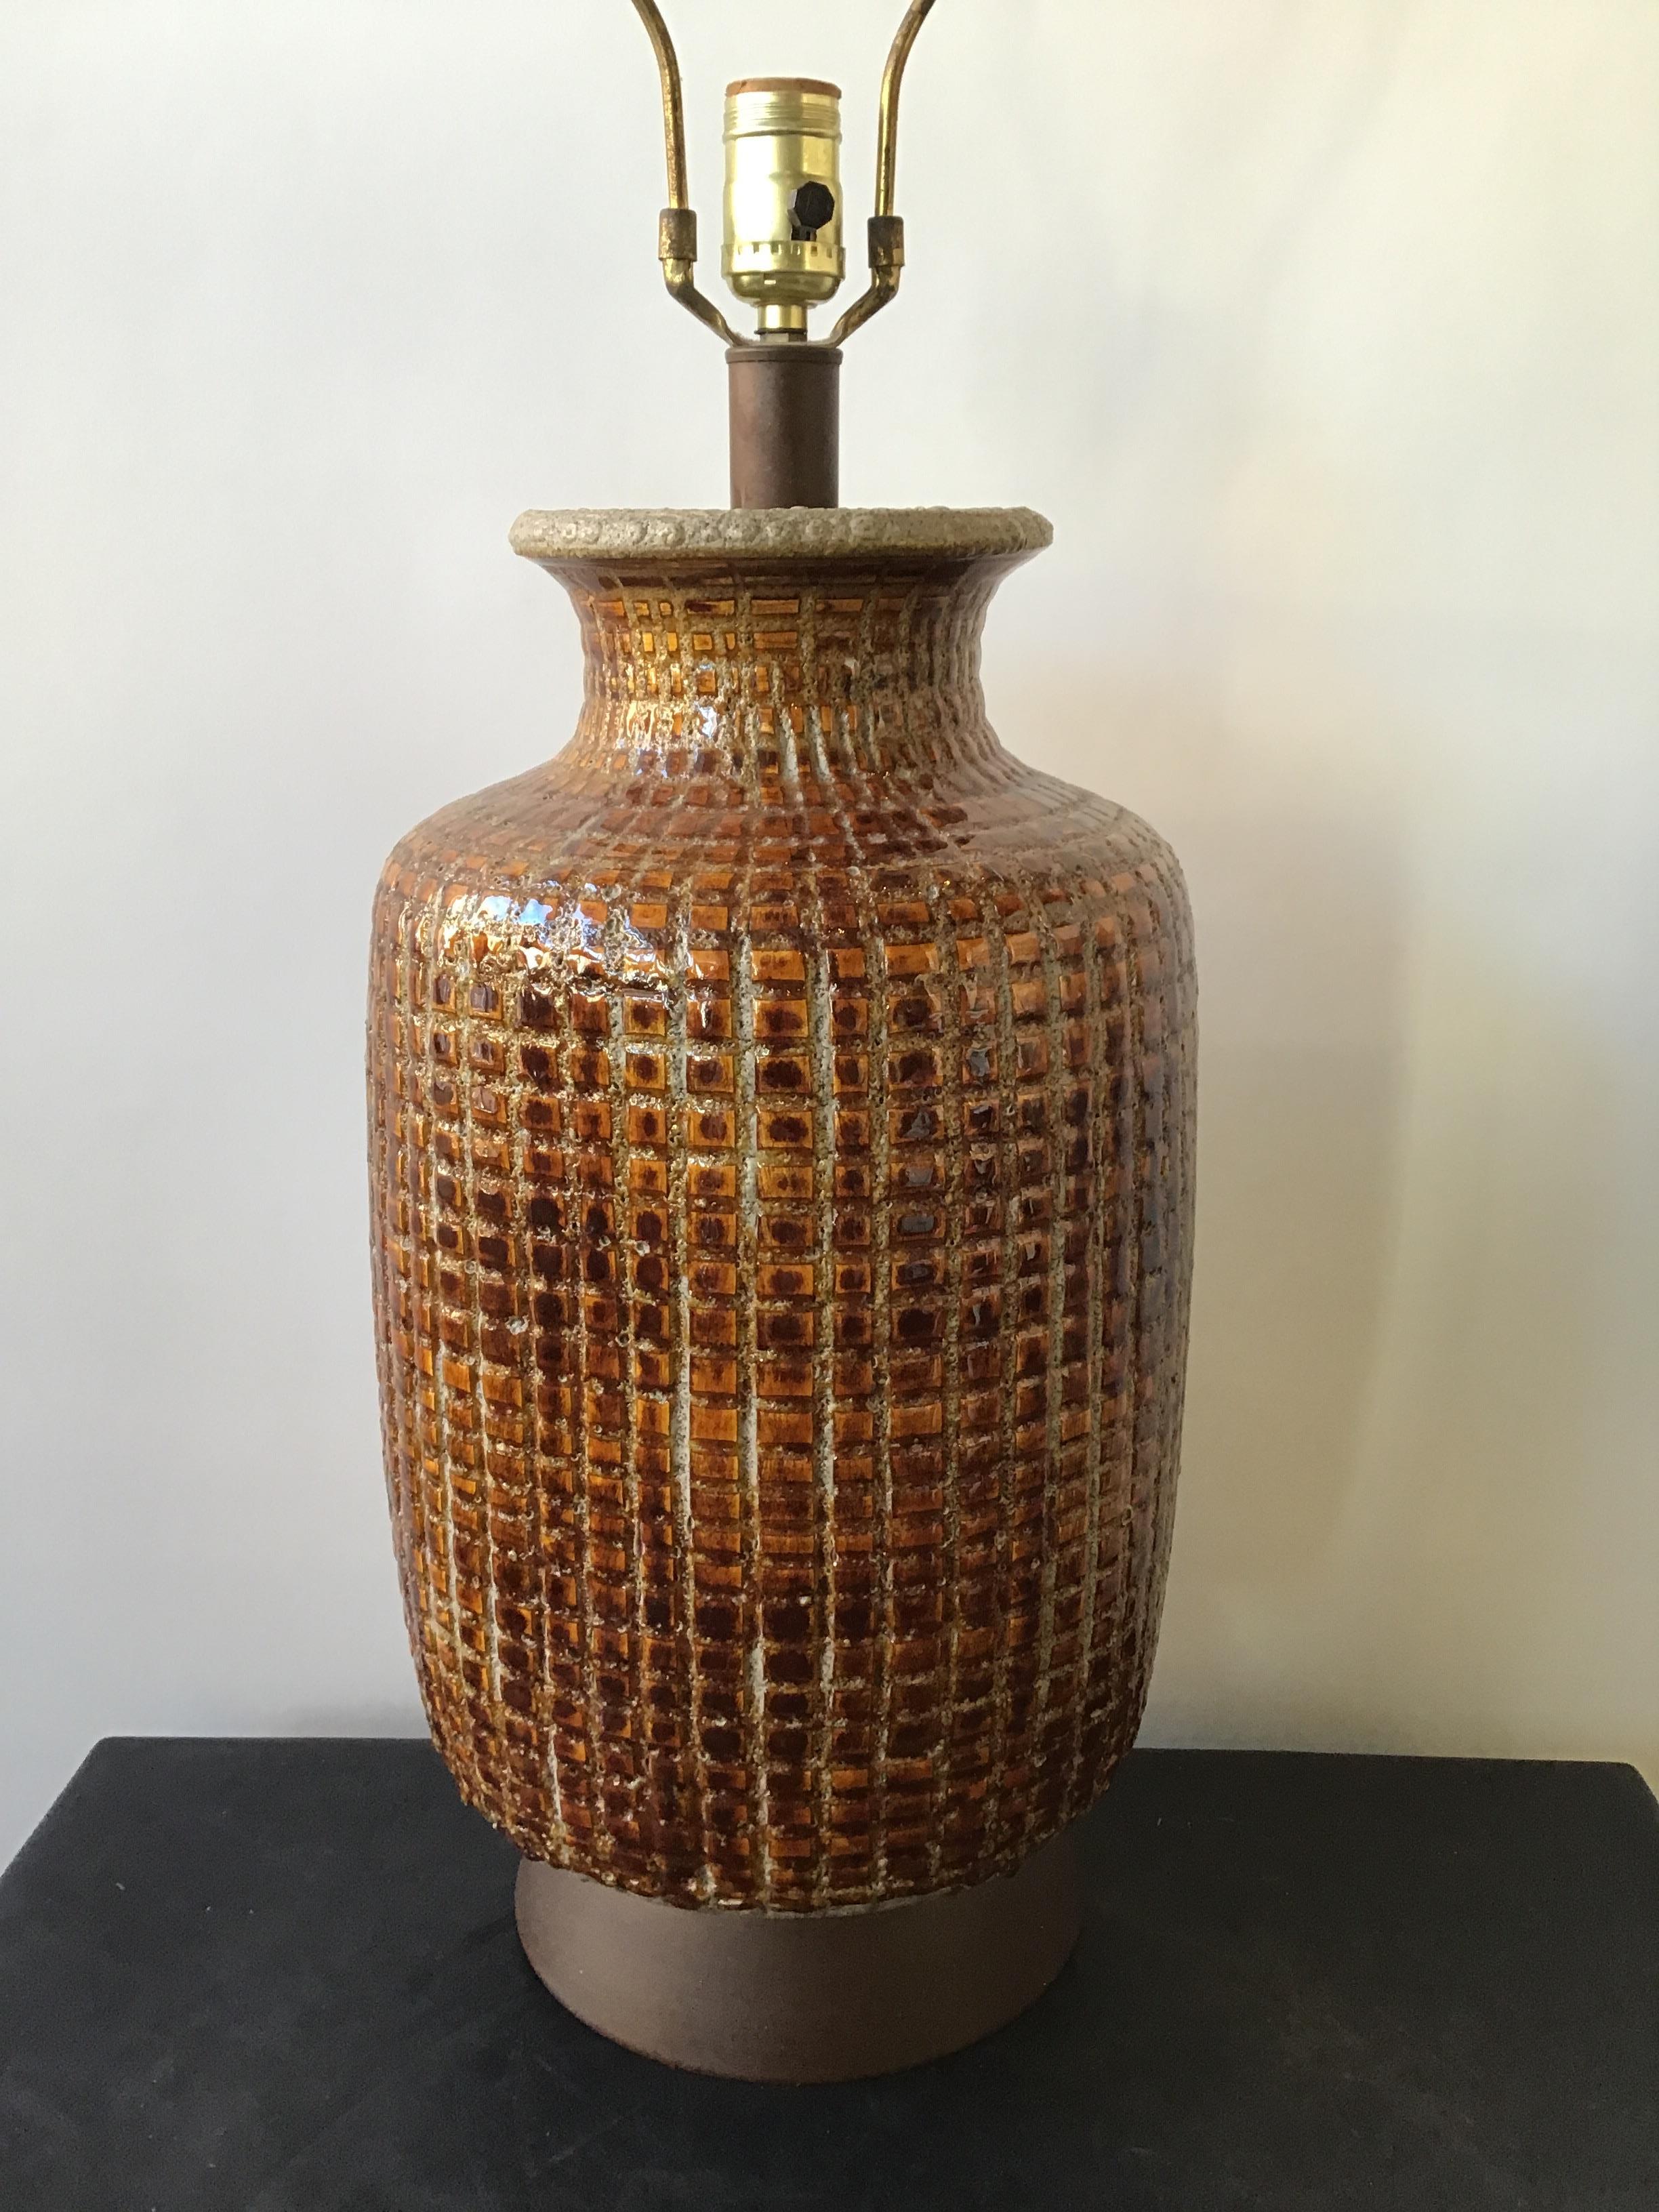 1960s ceramic textured brown lamp on metal base.